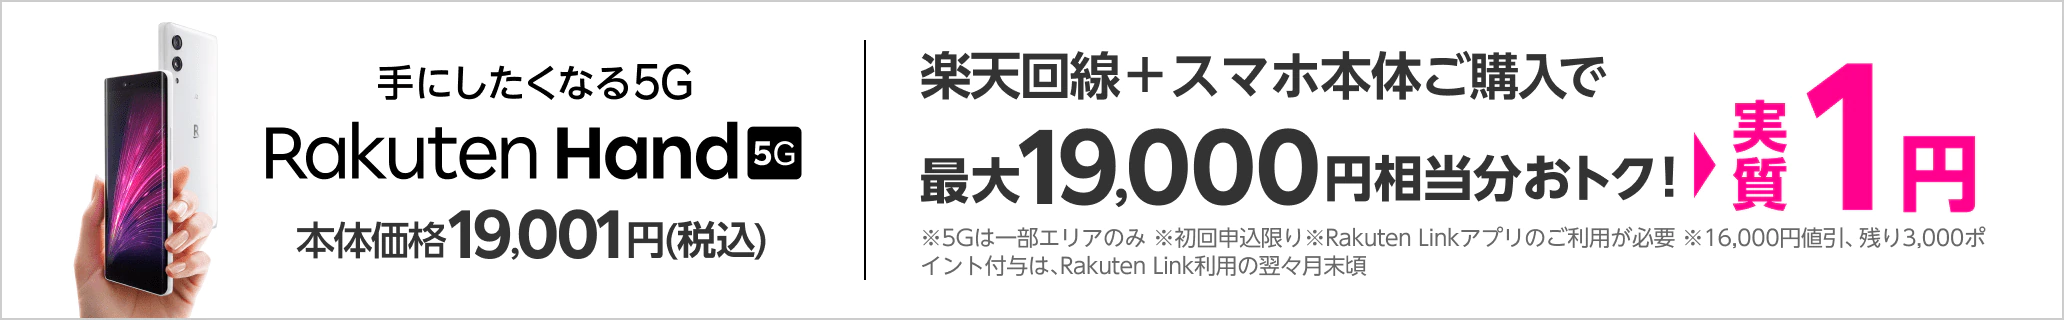 Rawkuten Hand 5G 実質1円